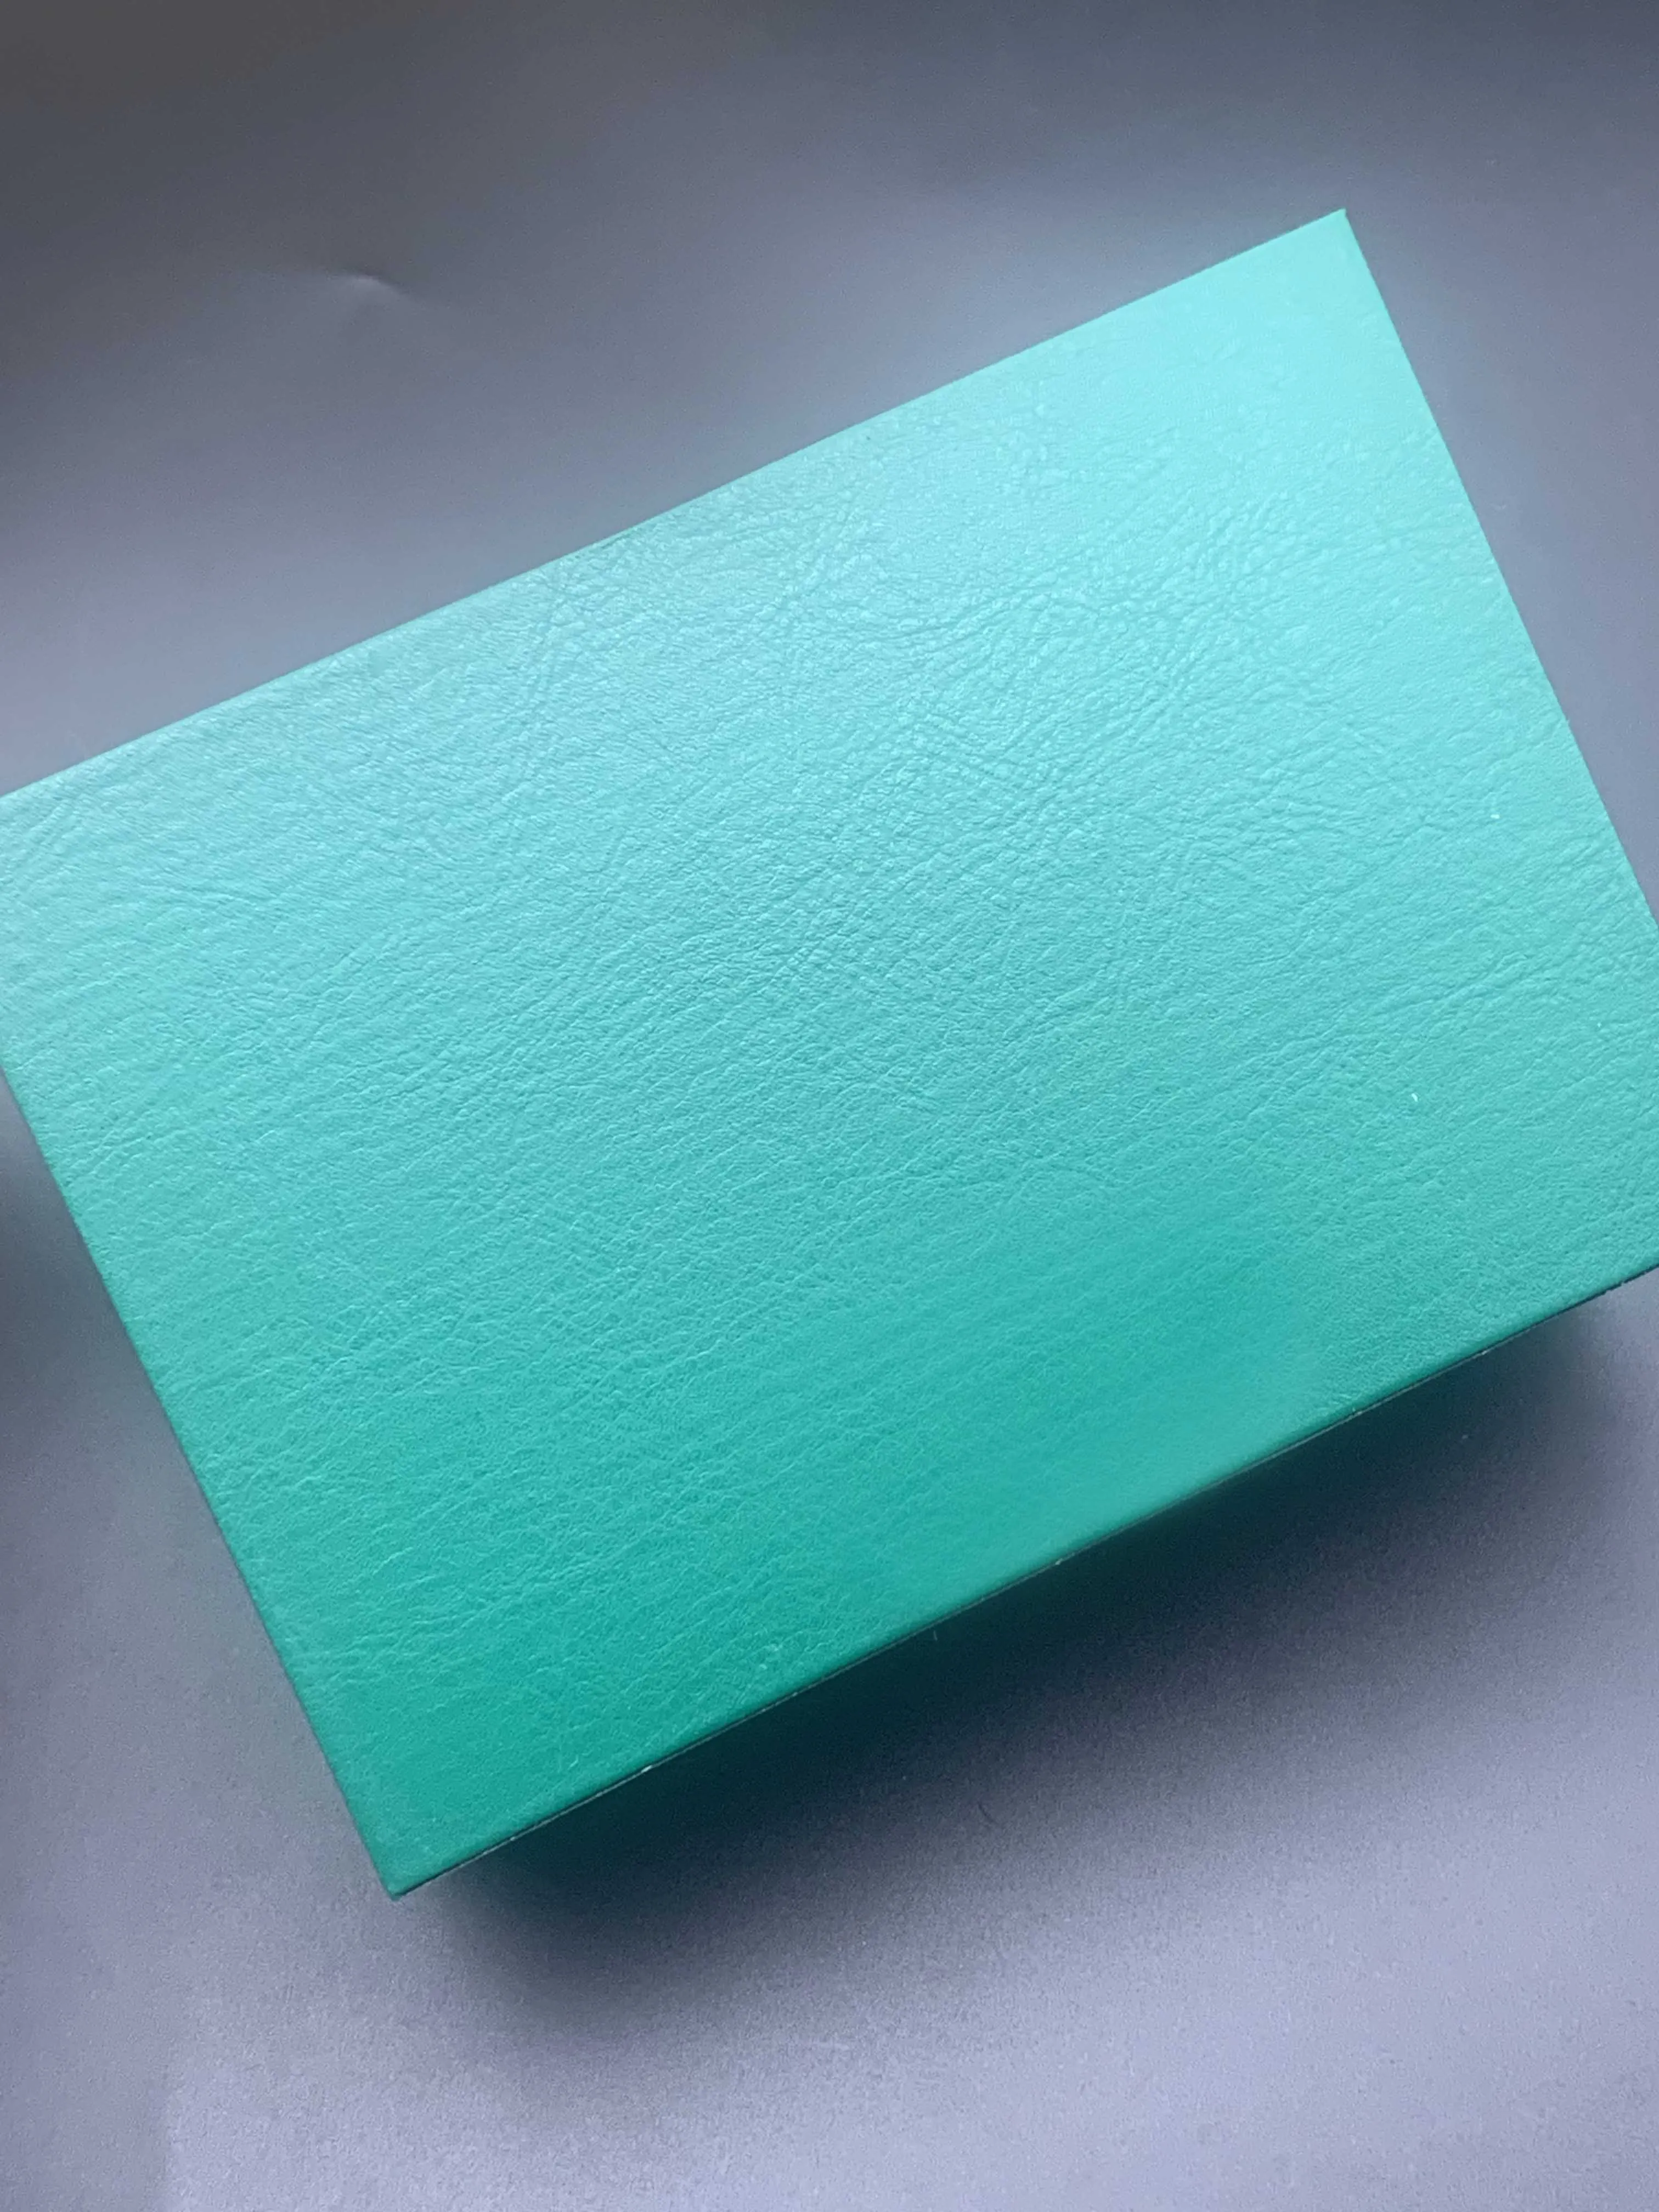 Oryginalne zielone drewniane pudełka Prezent można dostosować Model Numer seryjny Mała etykieta Anti-Pounterfeiting Card Box Brovure FIL262O